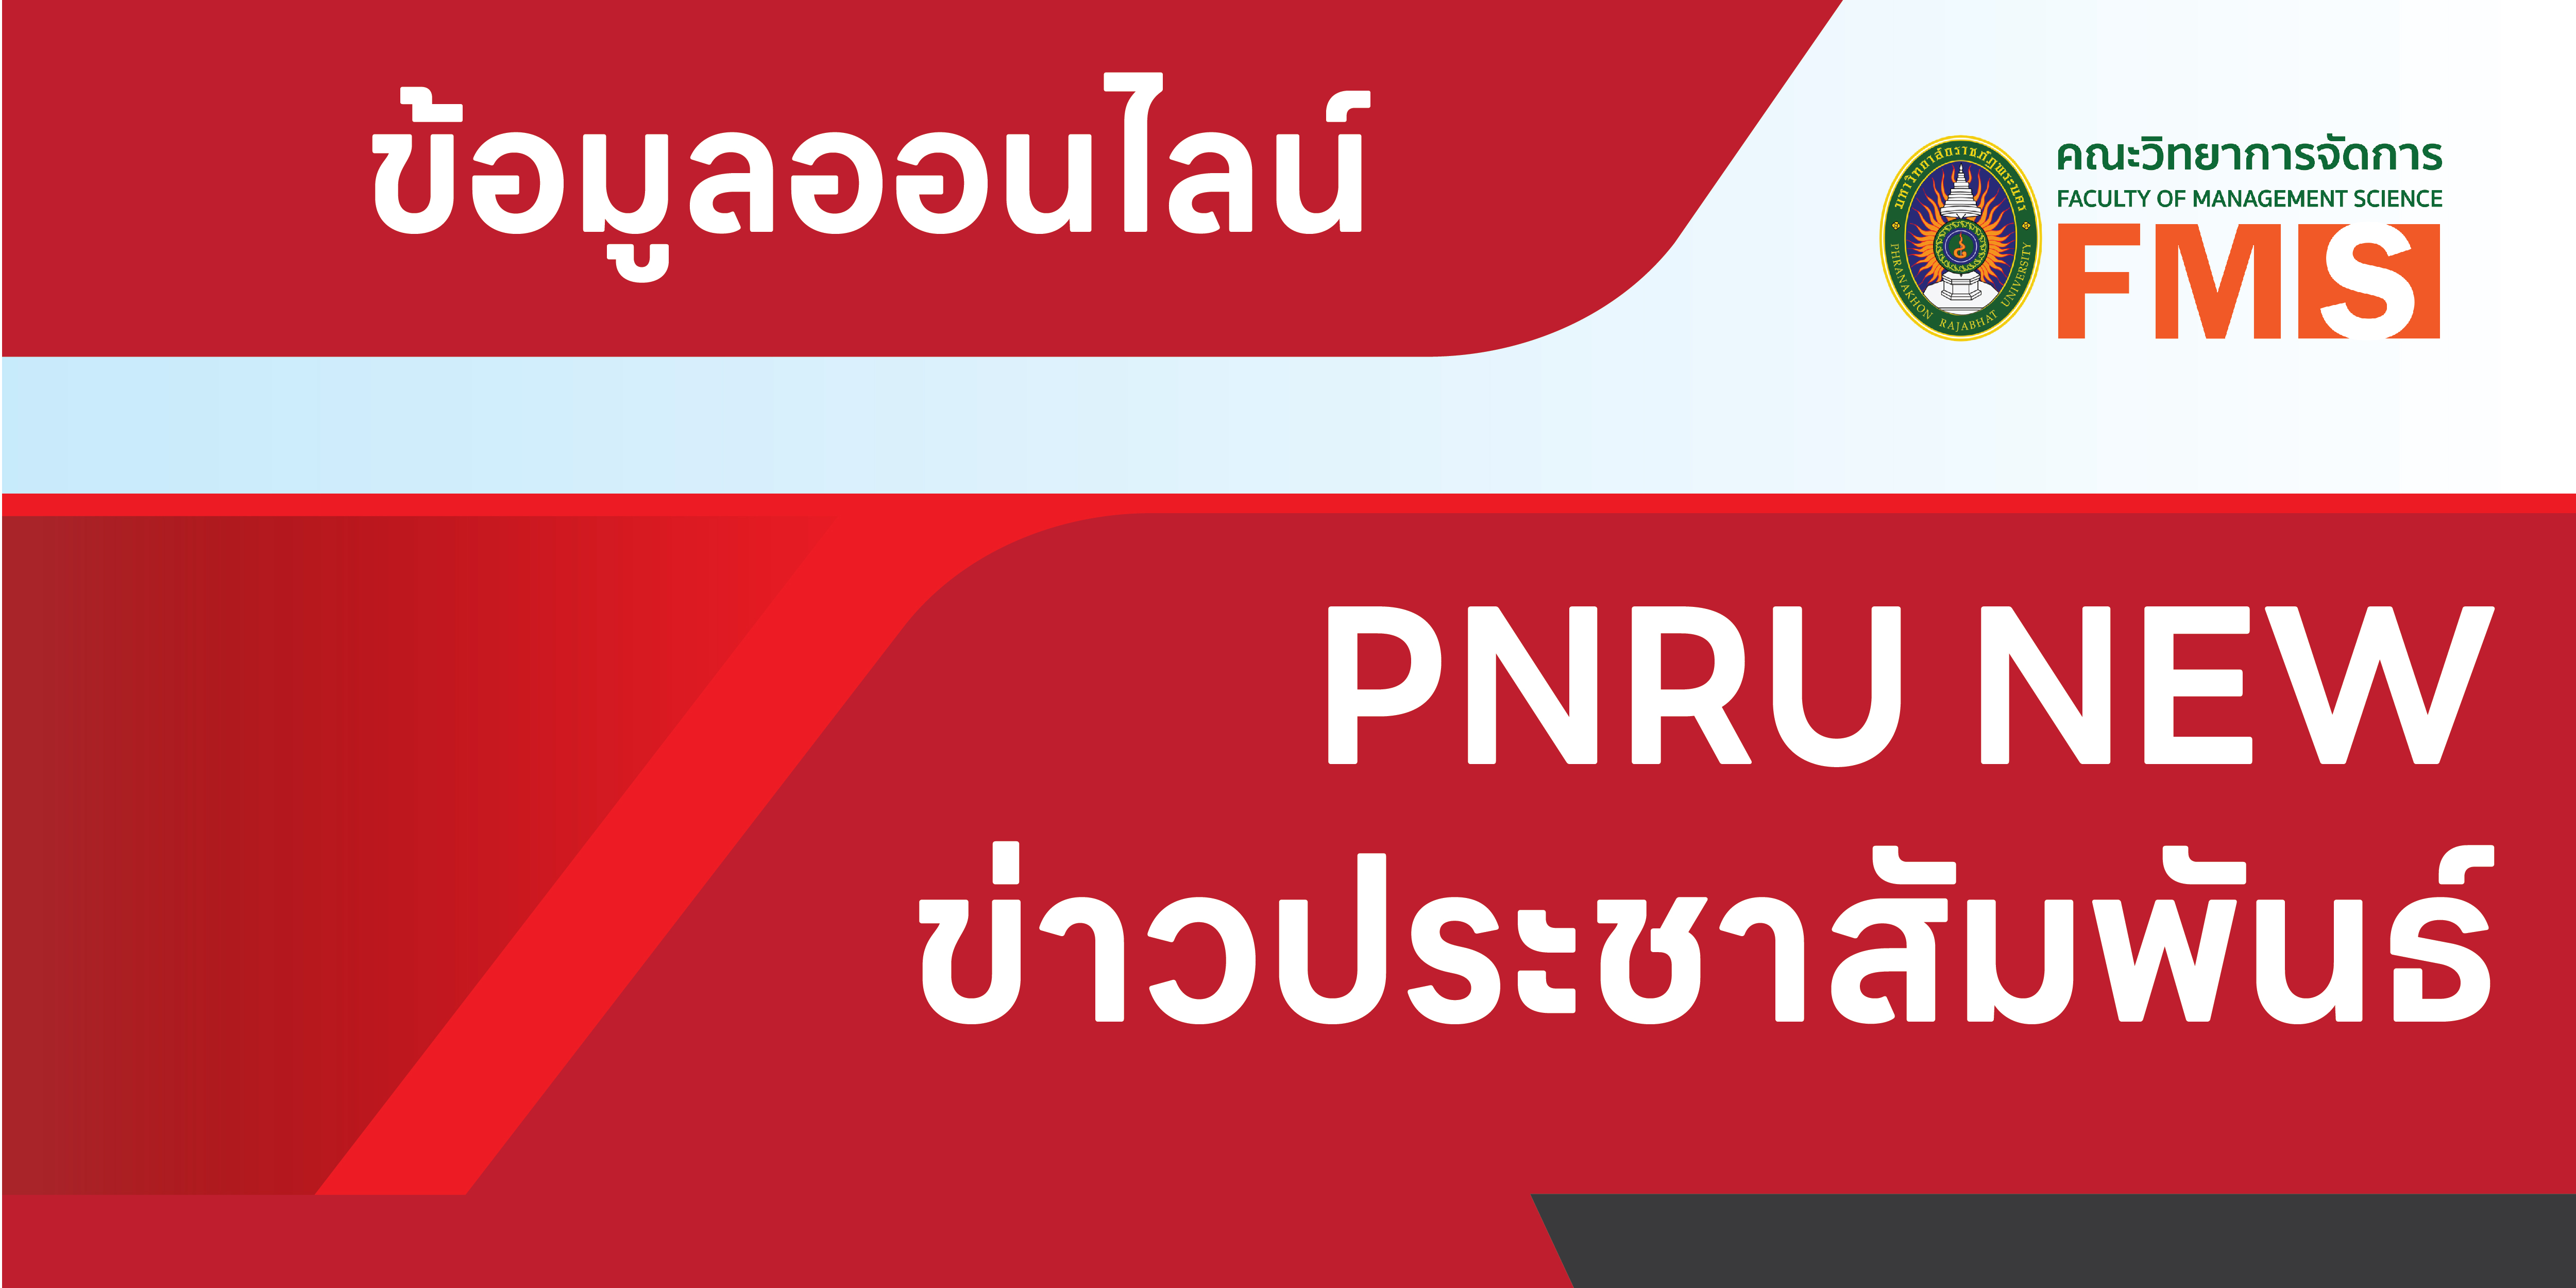 ข่าวมหาวิทยาลัย PNRU news